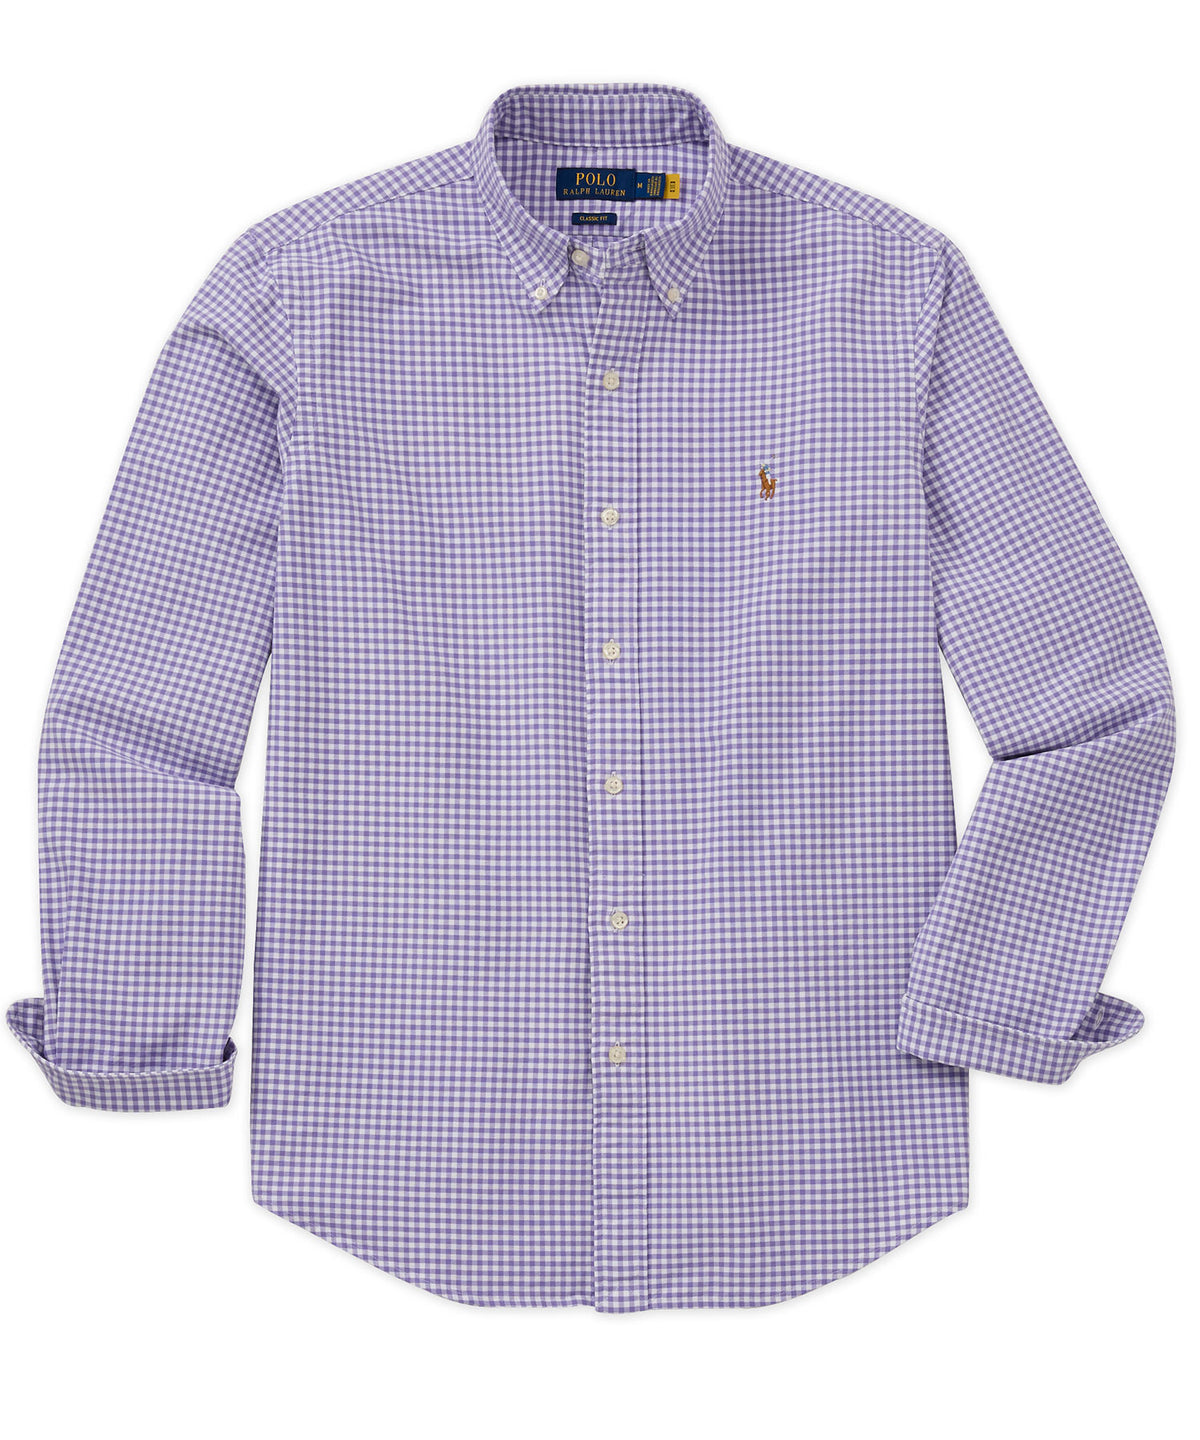 Polo Ralph Lauren Long Sleeve Oxford Button-Down Sport Shirt, Men's Big & Tall